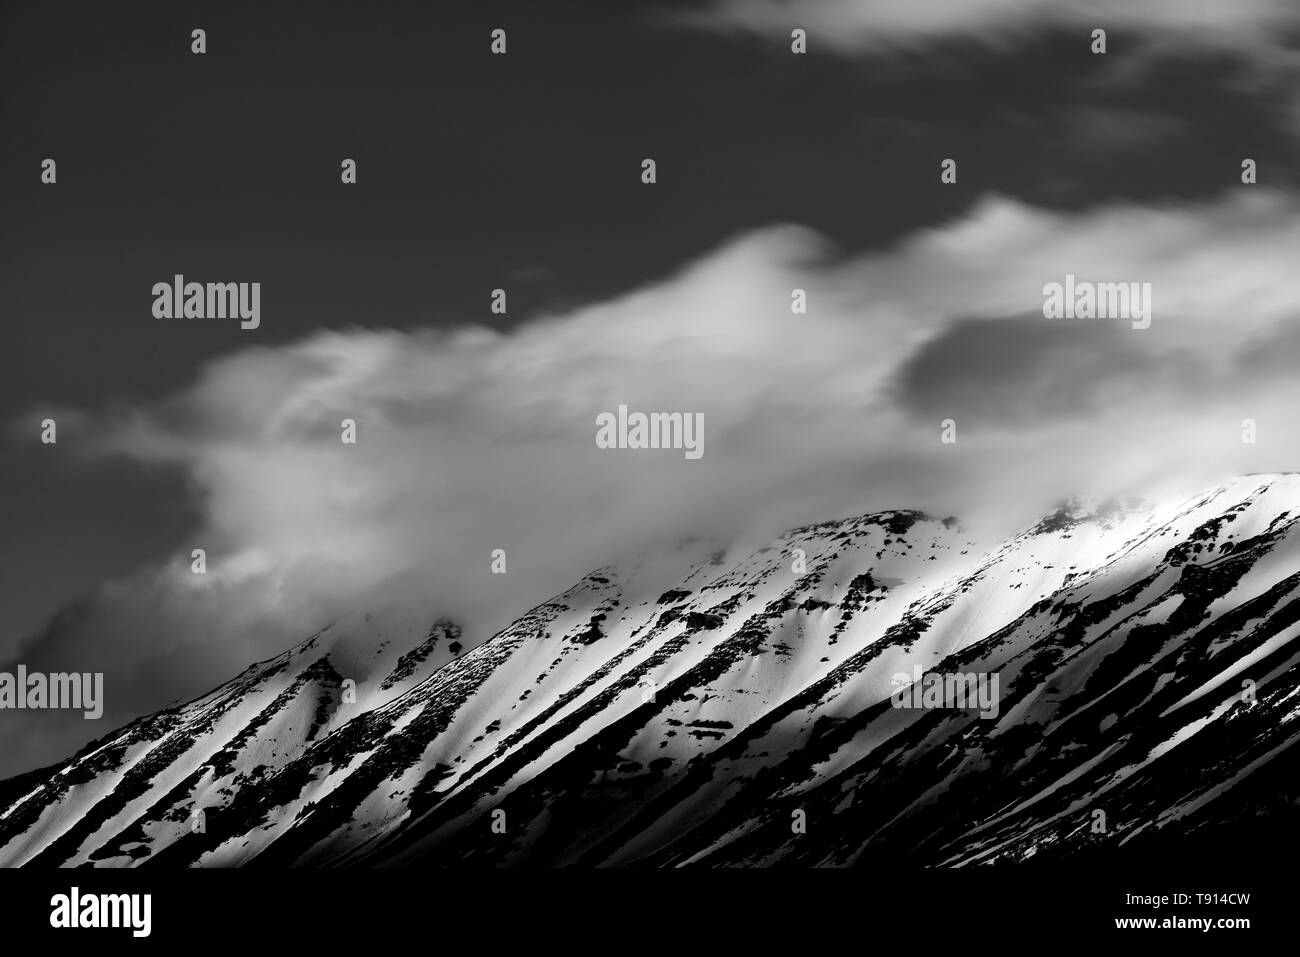 Les nuages en mouvement sur le sommet d'une montagne couverte de neige et frappé par le soleil Banque D'Images